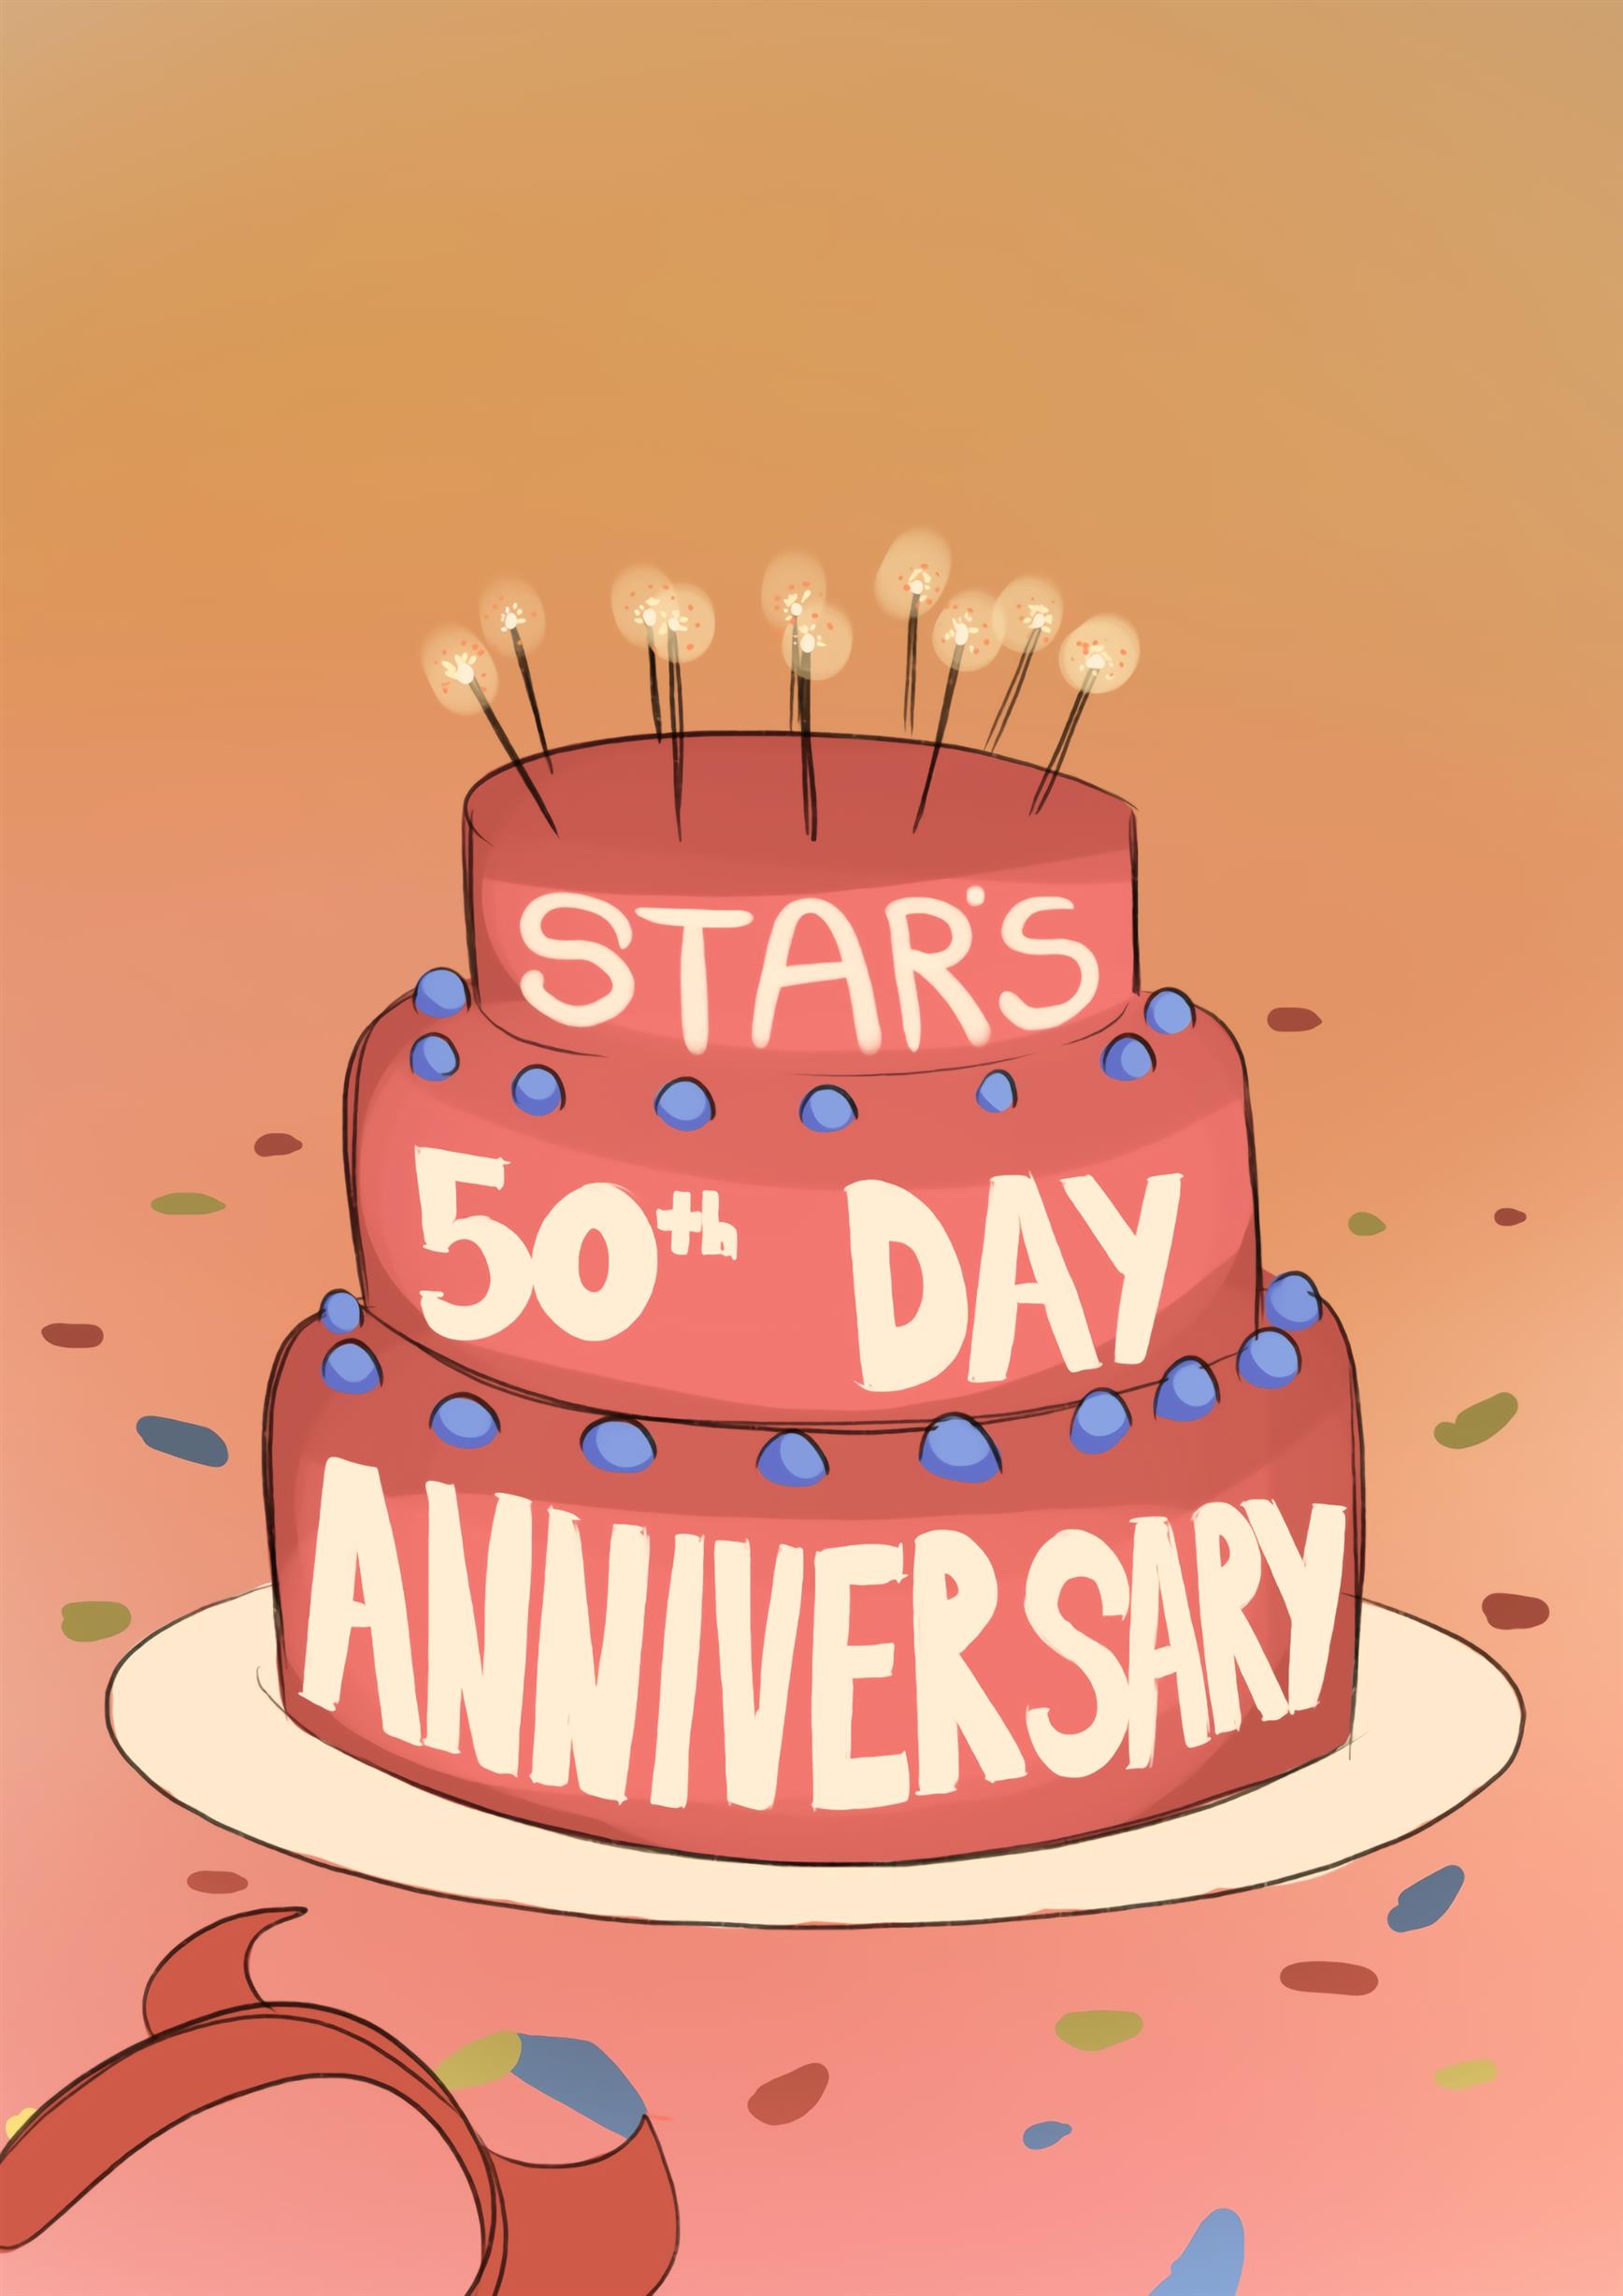 Aniversário de 50 dias da Star